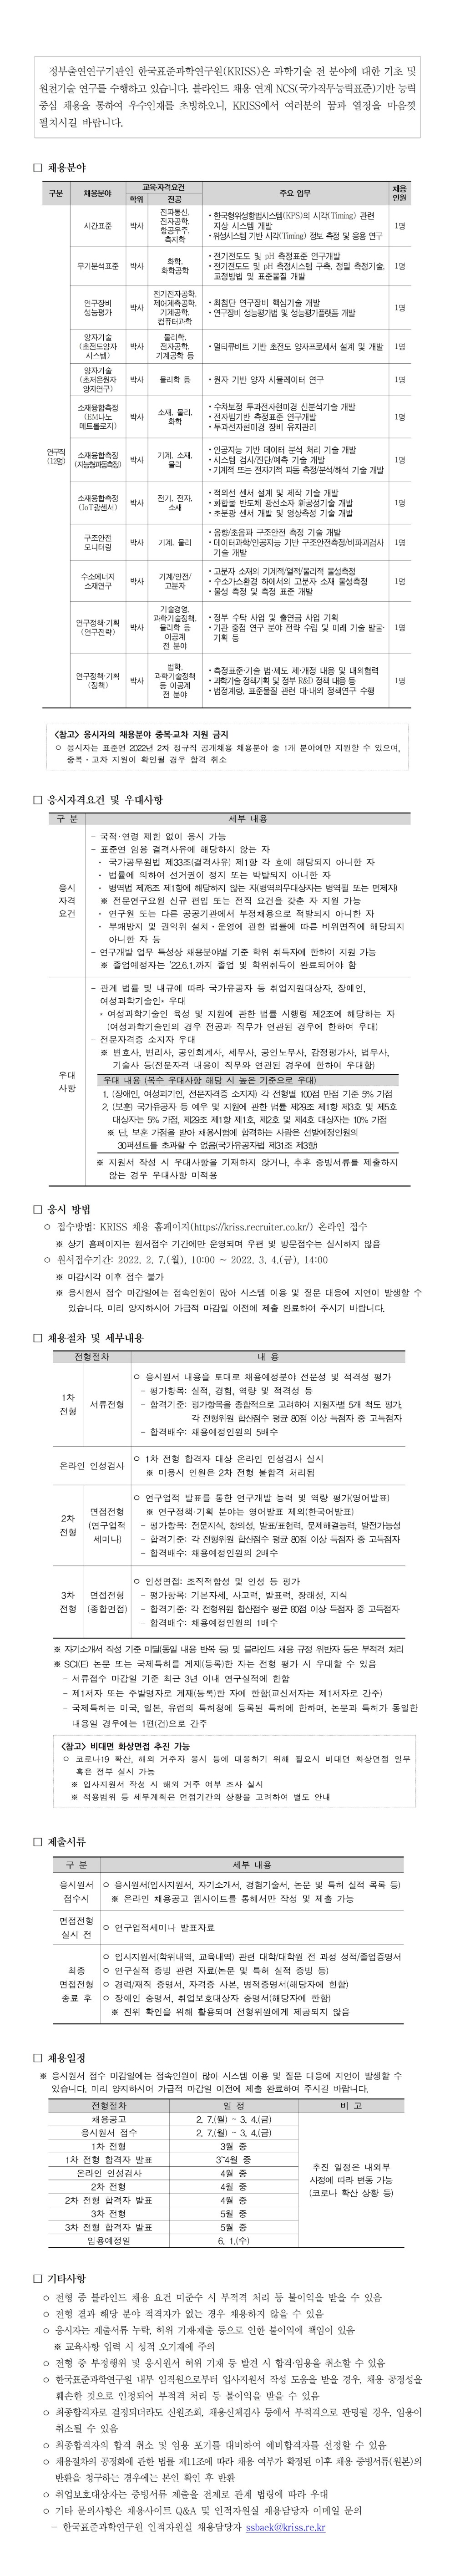 한국표준과학연구원 2022년 2차 정규직 공개채용문 - 자세한 내용은 하단의 pdf 첨부파일을 참조하세요.